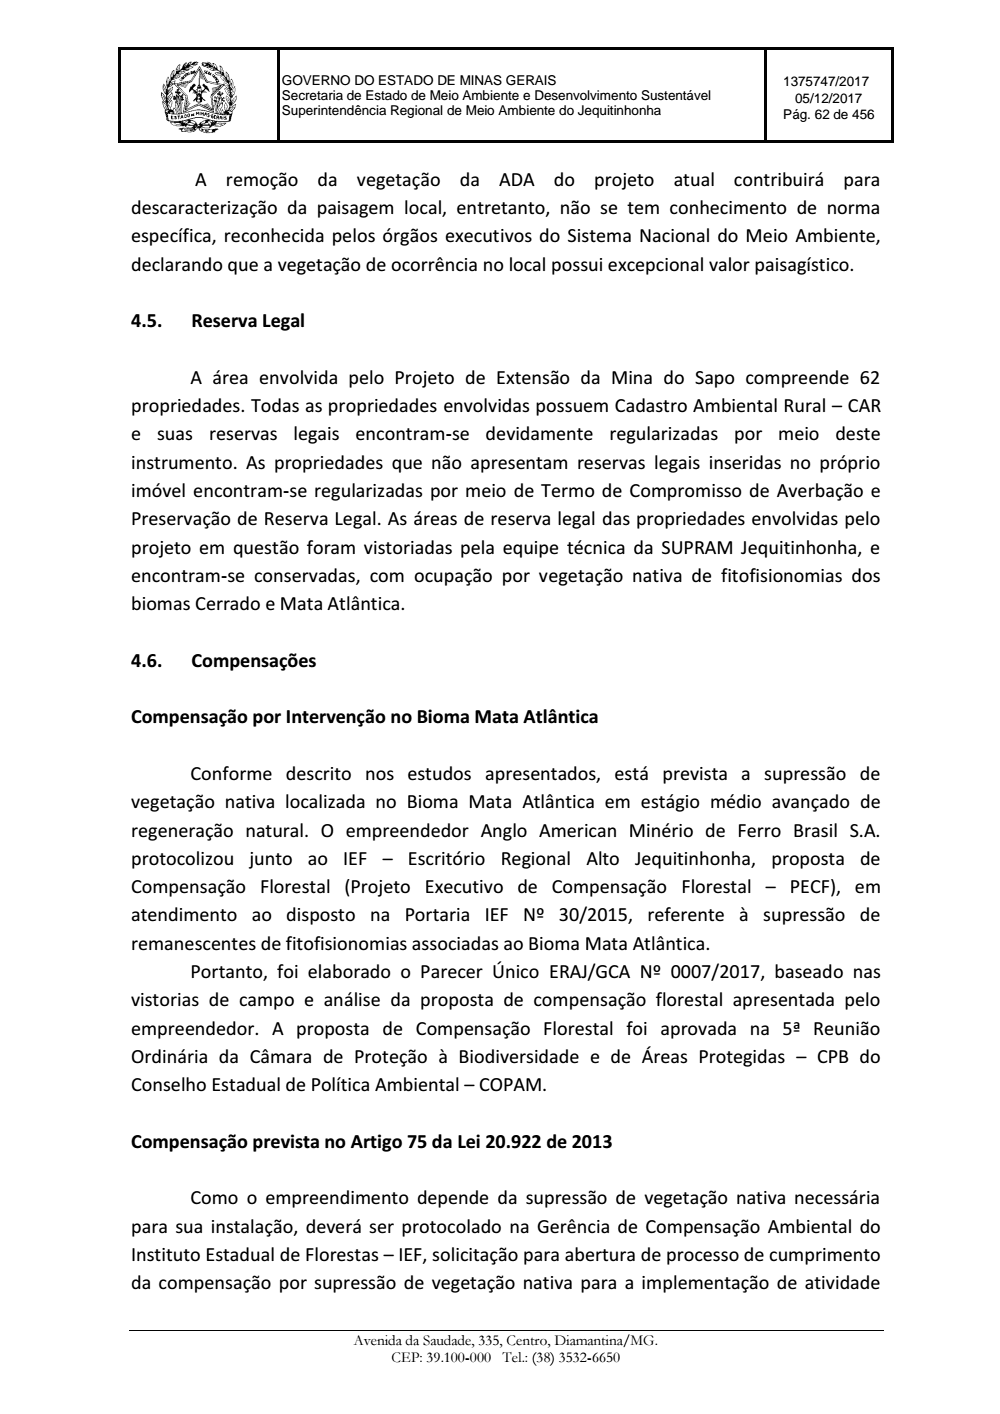 Page 62 from Parecer único da Secretaria de estado de Meio Ambiente e Desenvolvimento Sustentável (SEMAD)